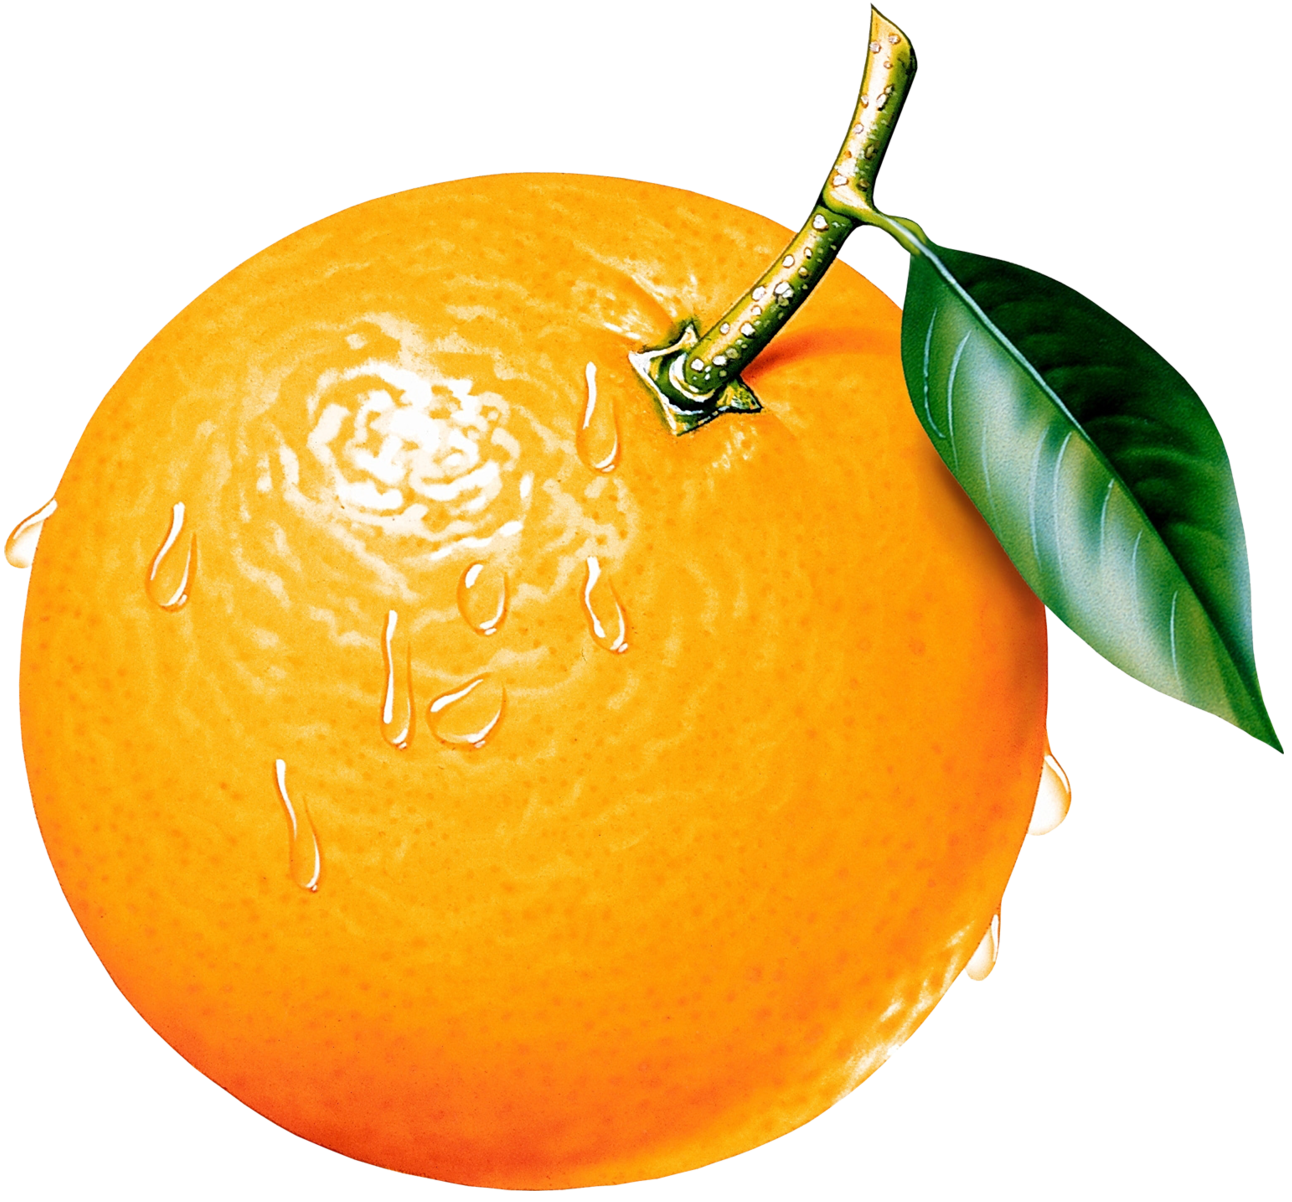 Orange fruit clipart 